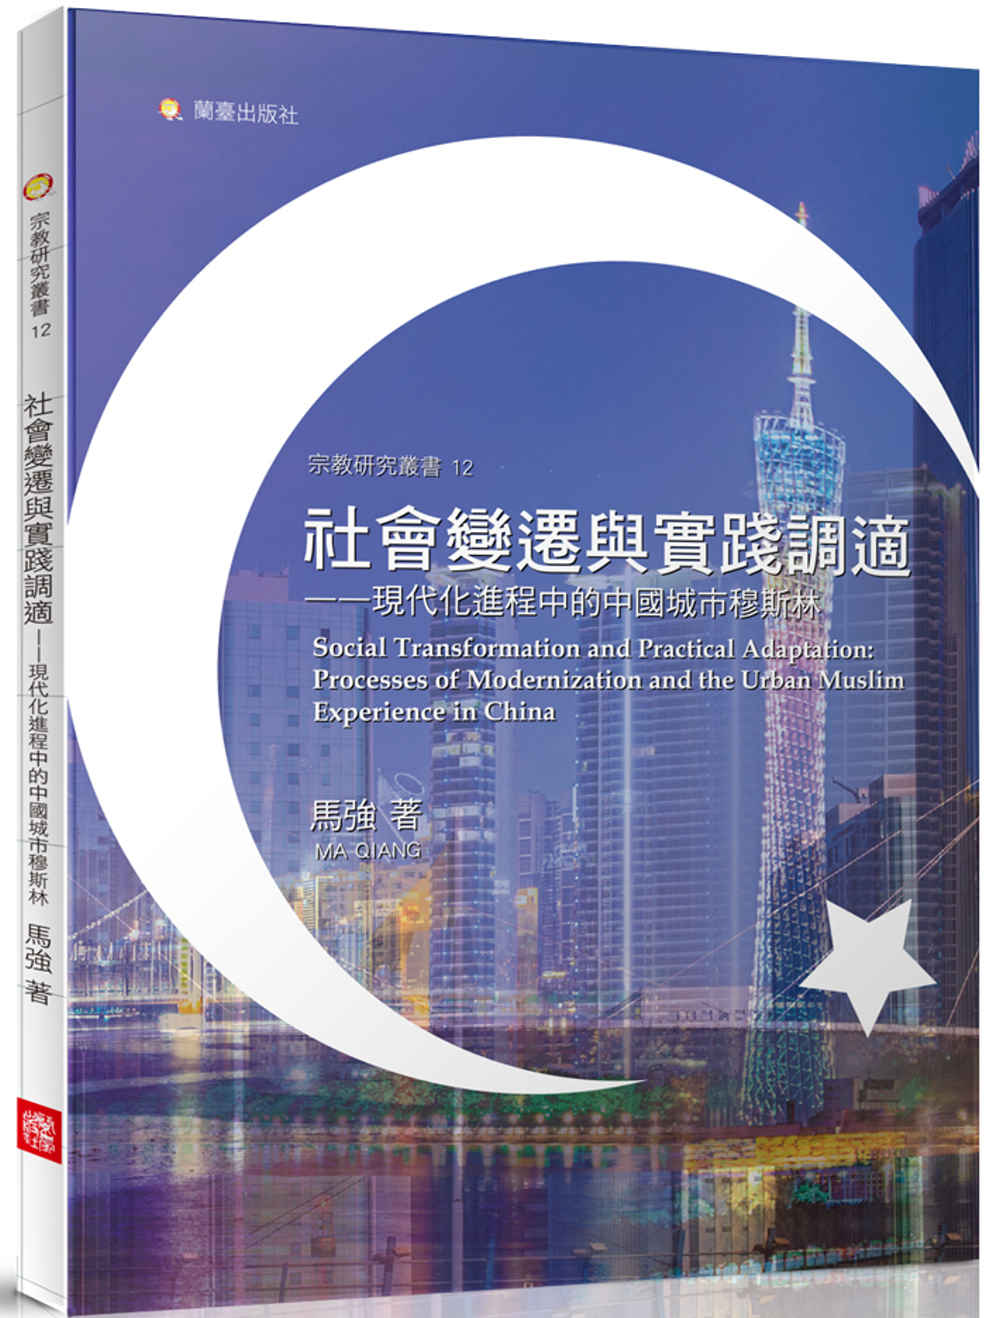 社會變遷與實踐調適─ 現代化進程中的中國城市穆斯林